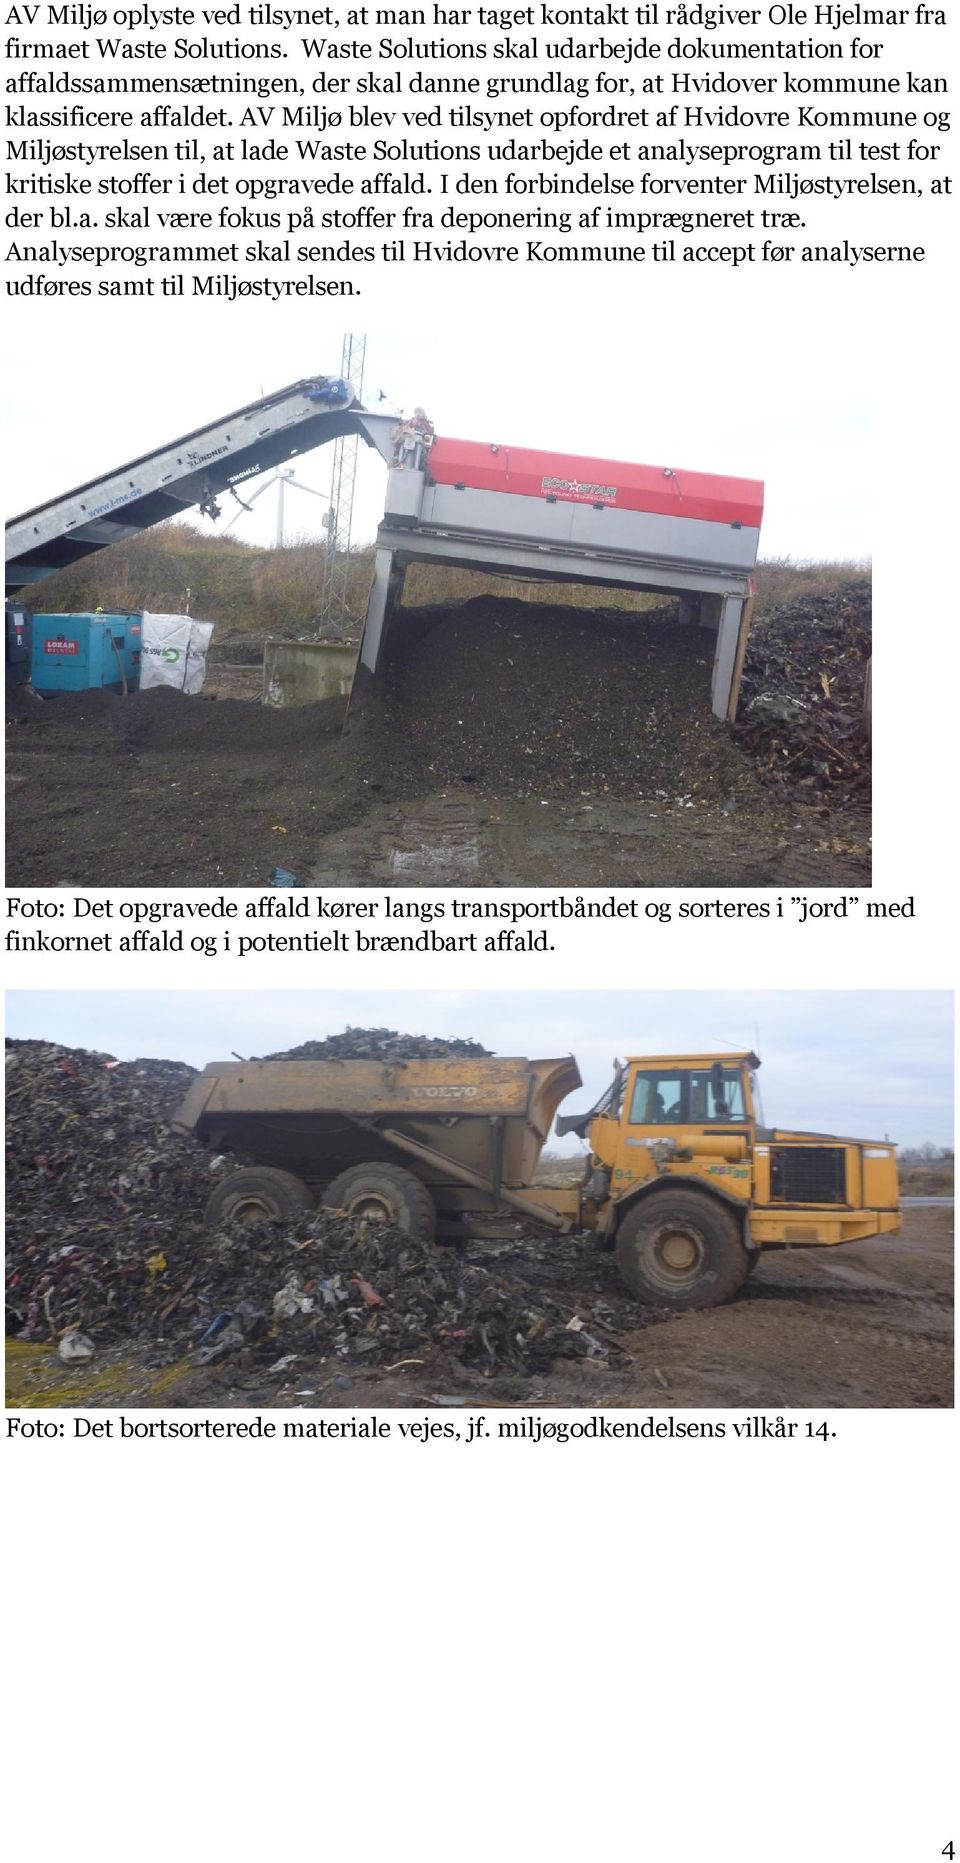 AV Miljø blev ved tilsynet opfordret af Hvidovre Kommune og Miljøstyrelsen til, at lade Waste Solutions udarbejde et analyseprogram til test for kritiske stoffer i det opgravede affald.